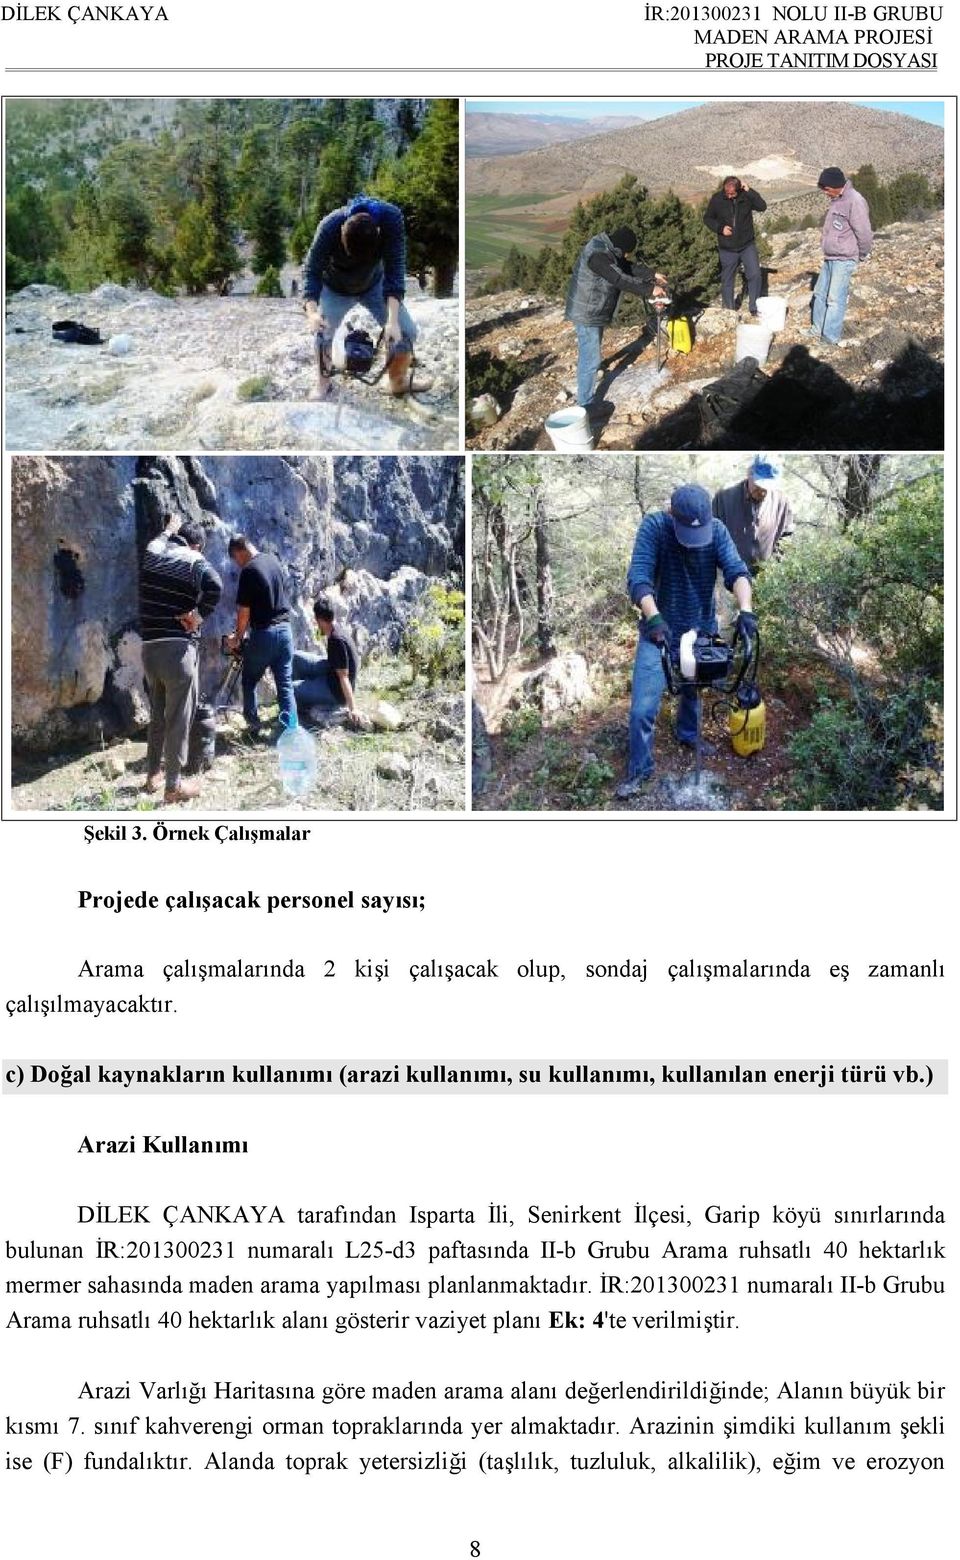 ) Arazi Kullanımı DİLEK ÇANKAYA tarafından Isparta İli, Senirkent İlçesi, Garip köyü sınırlarında bulunan İR:201300231 numaralı L25-d3 paftasında II-b Grubu Arama ruhsatlı 40 hektarlık mermer